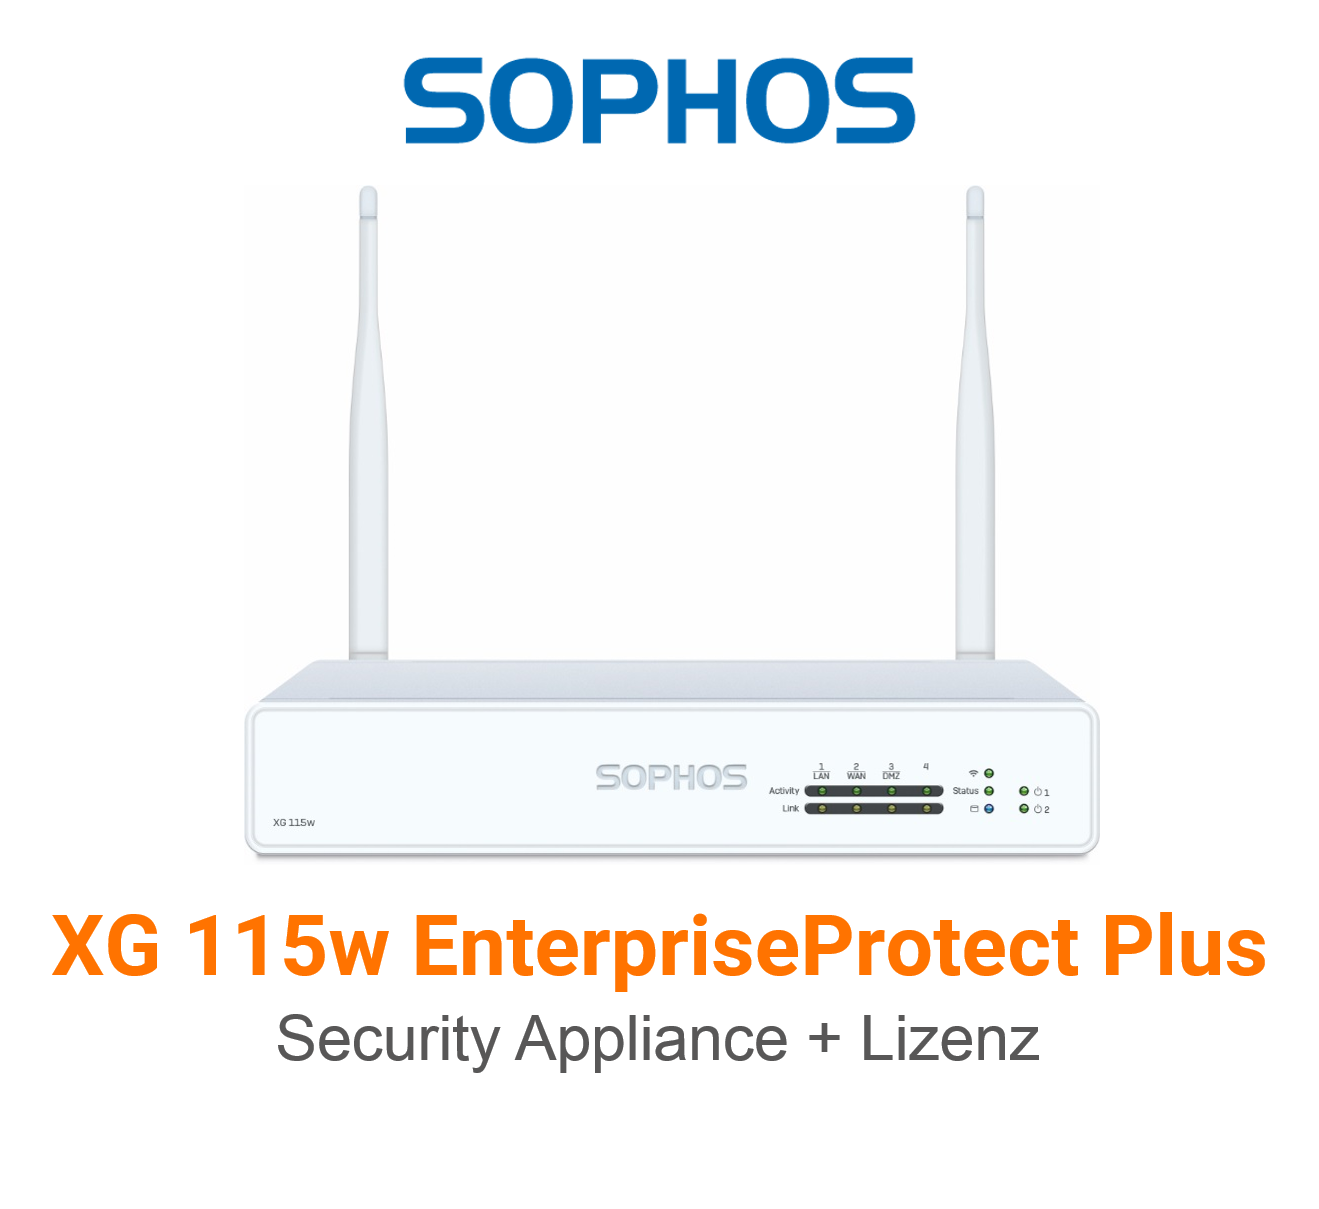 Sophos XG 115w EnterpriseProtect Plus Bundle (Hardware + Lizenz) (End of Sale/Life)